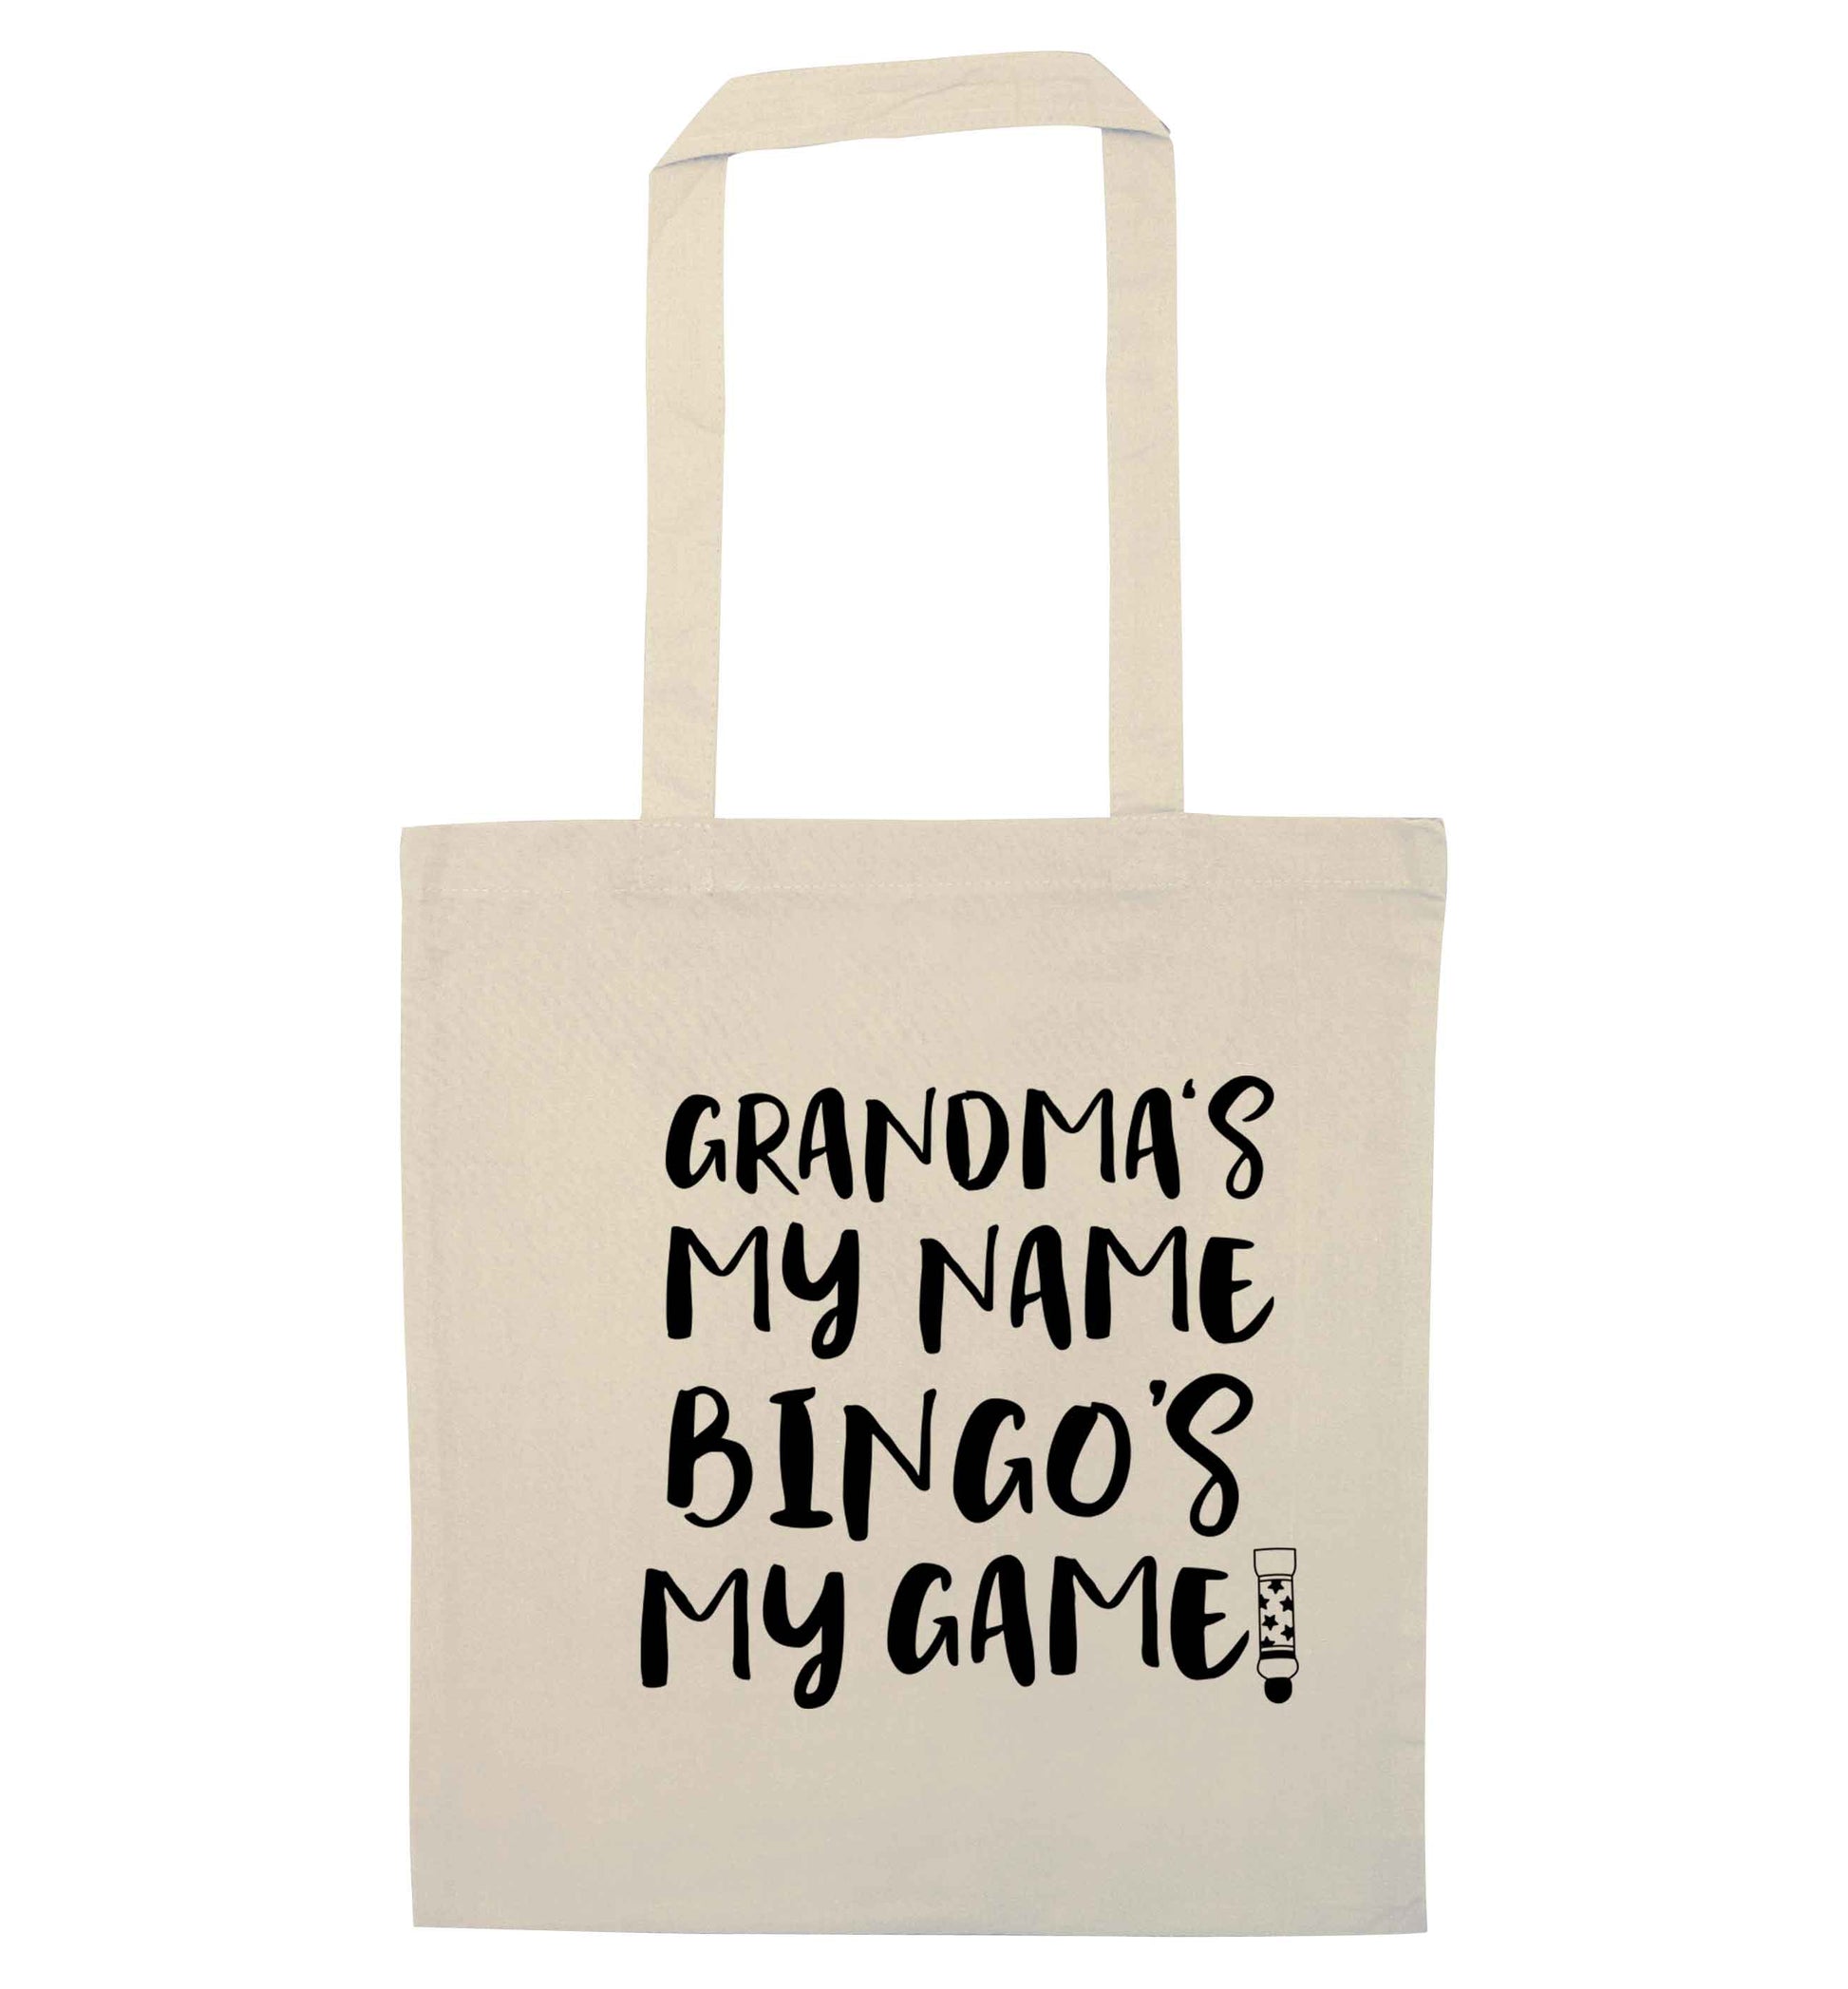 Grandma's my name bingo's my game! natural tote bag